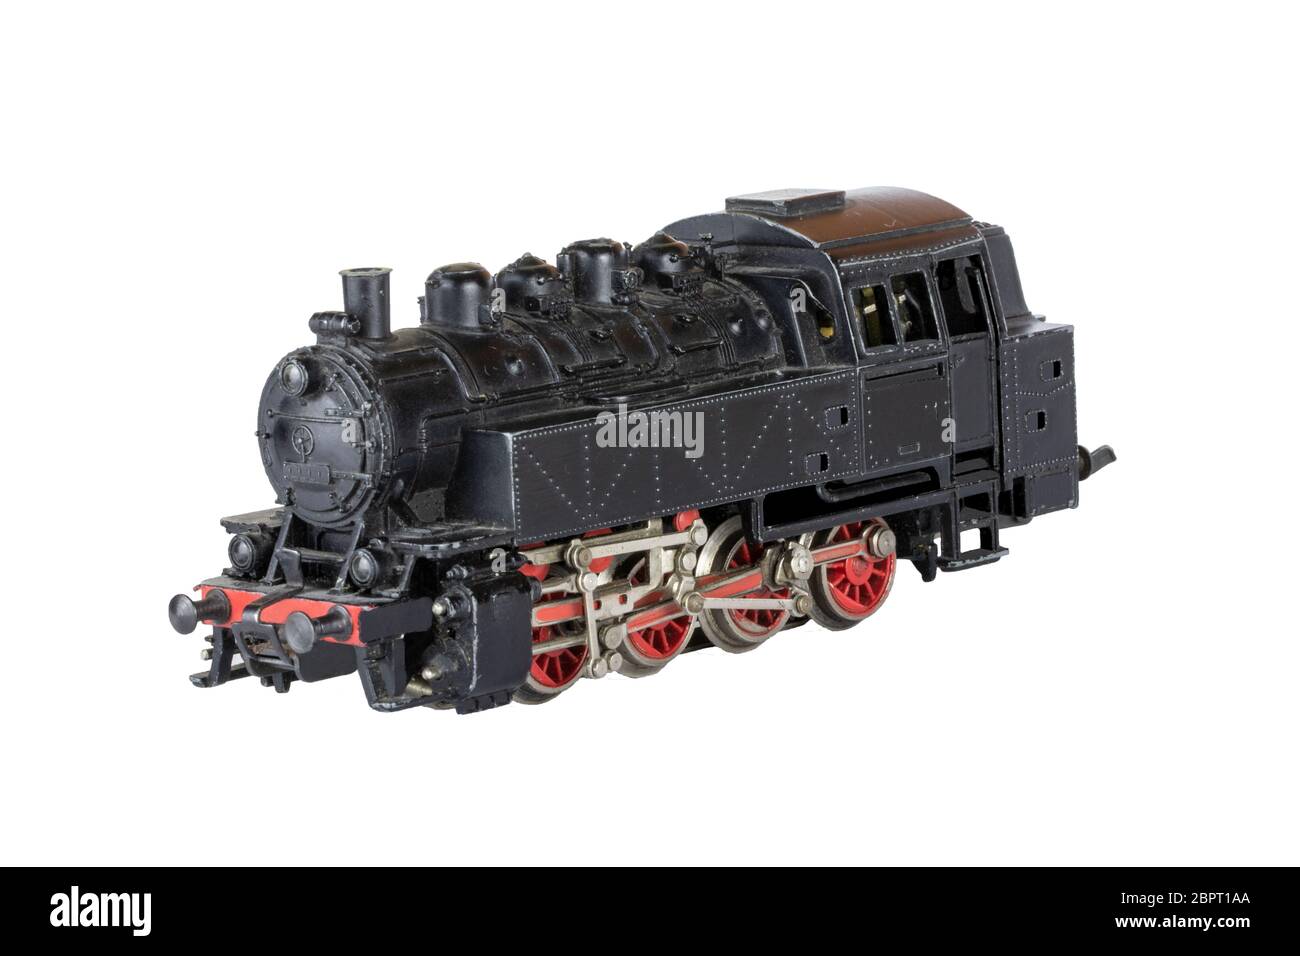 Isolé de la locomotive. Modèle vintage d'un train à vapeur jouet électrique isolé sur un fond blanc. Arrière-plan de décorations. Banque D'Images